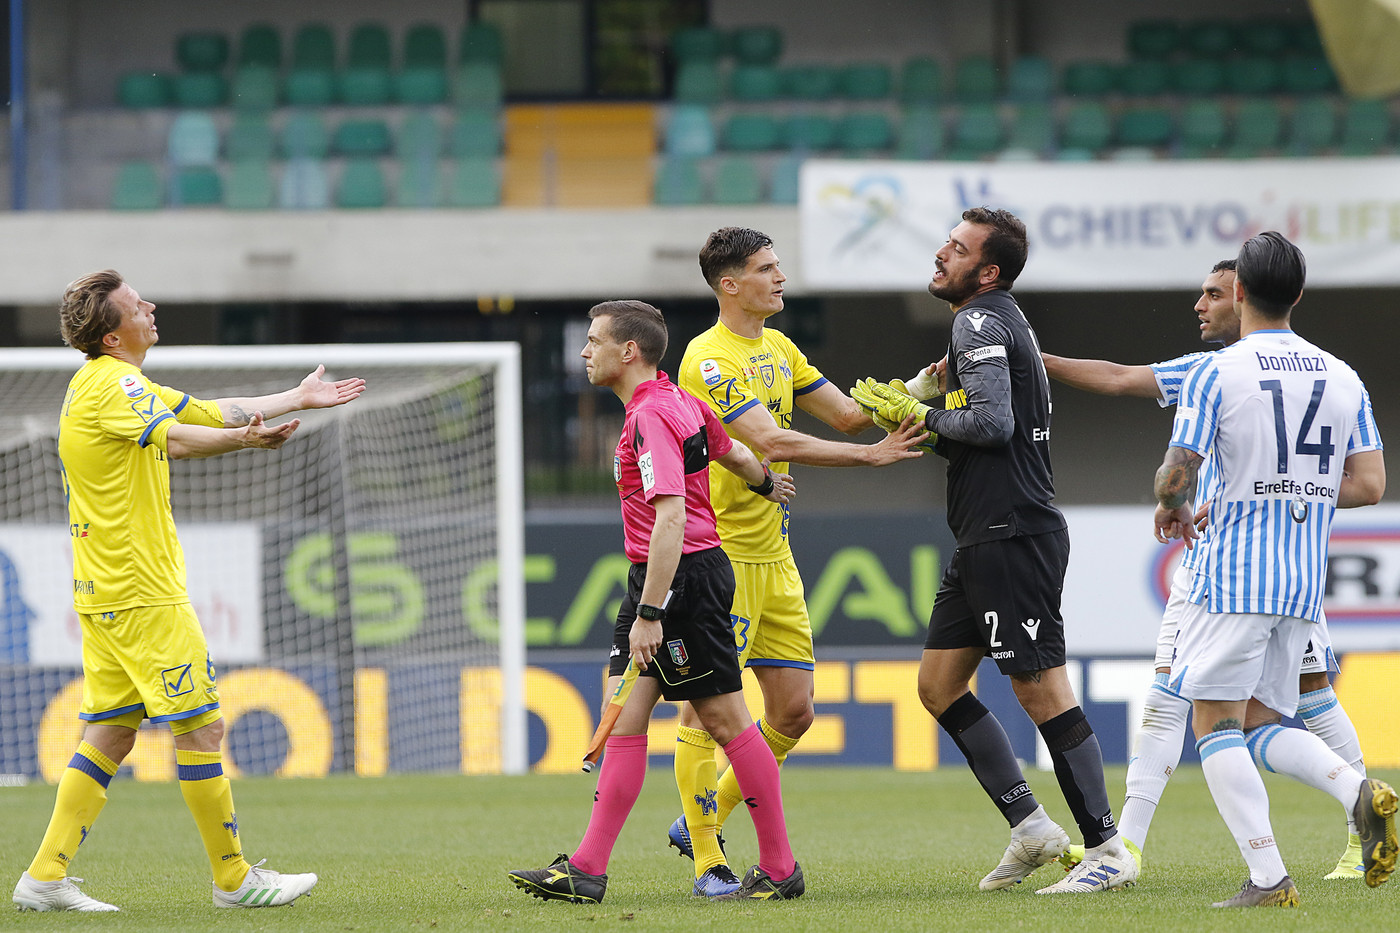 Serie A, Chievo-Spal 0-4 | Il fotoracconto